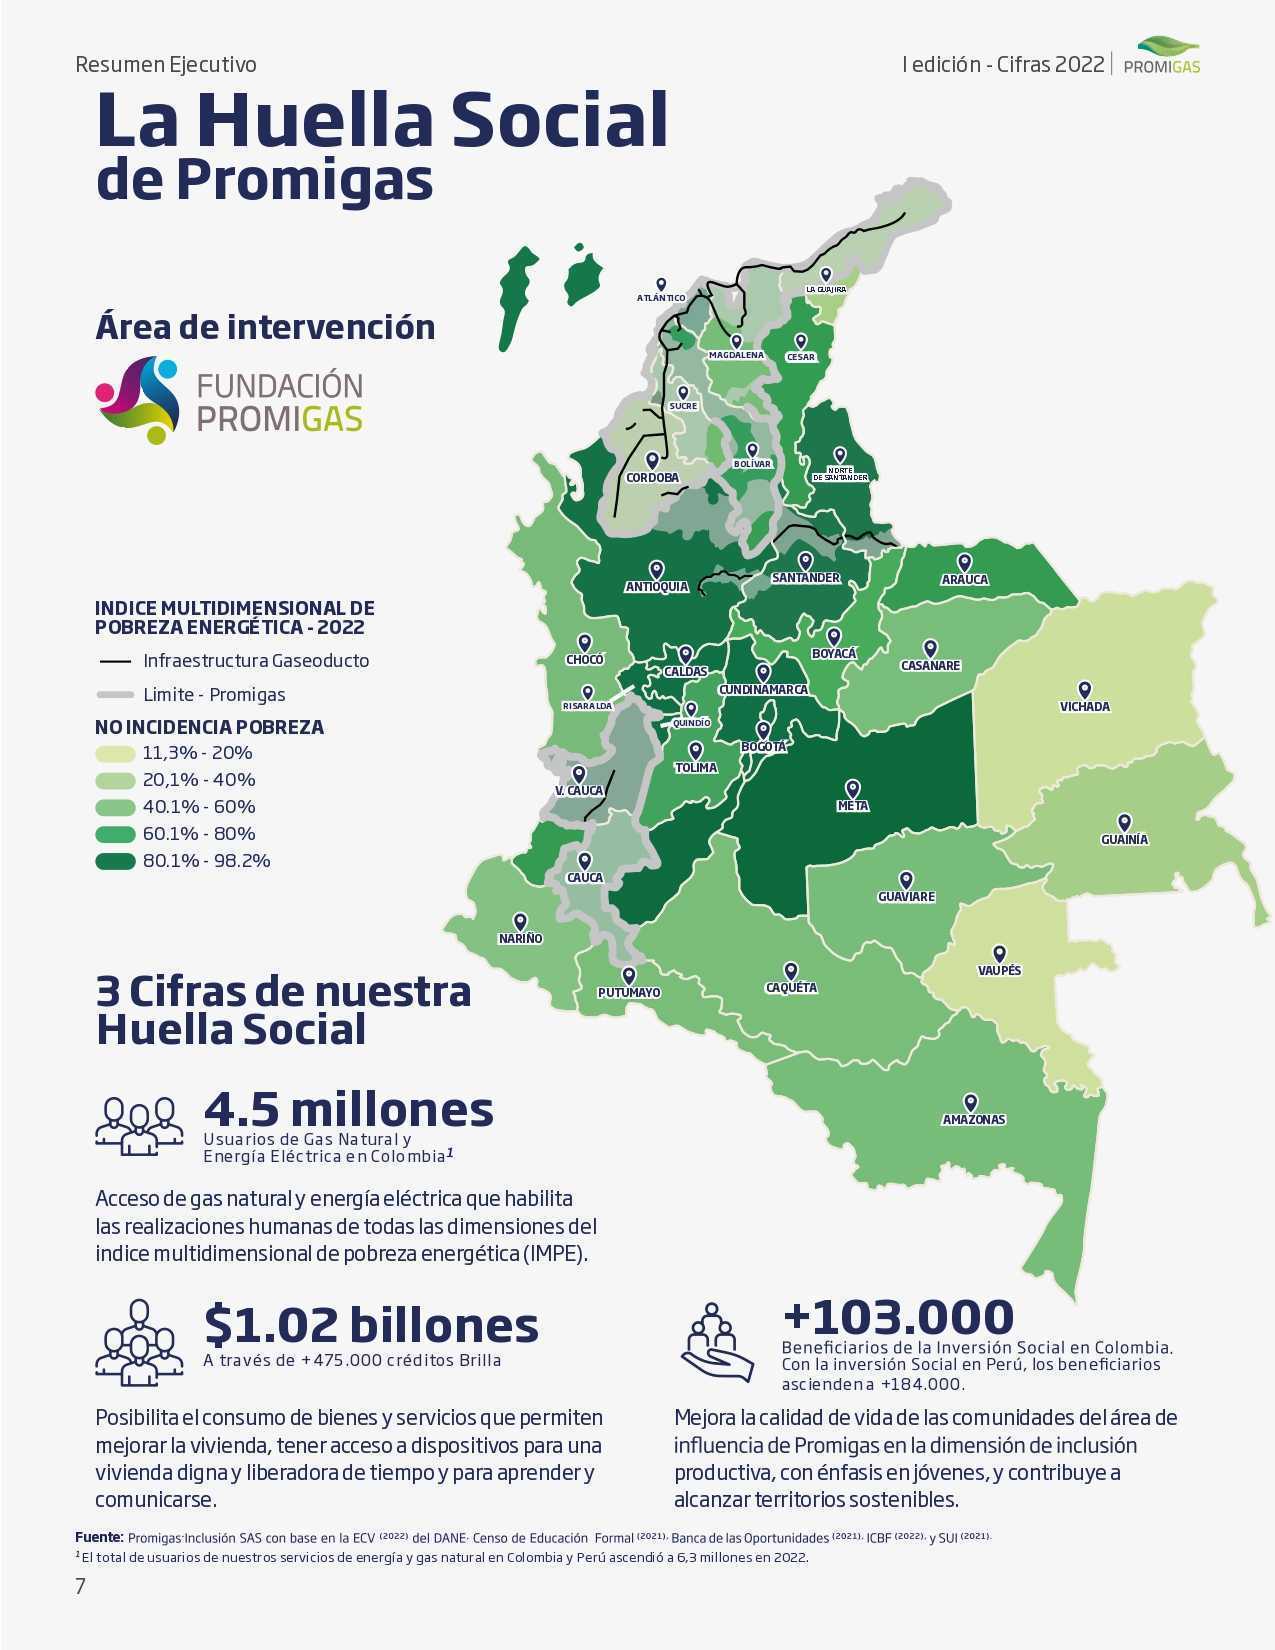 Casi 10 millones de colombianos está en situación de pobreza energética